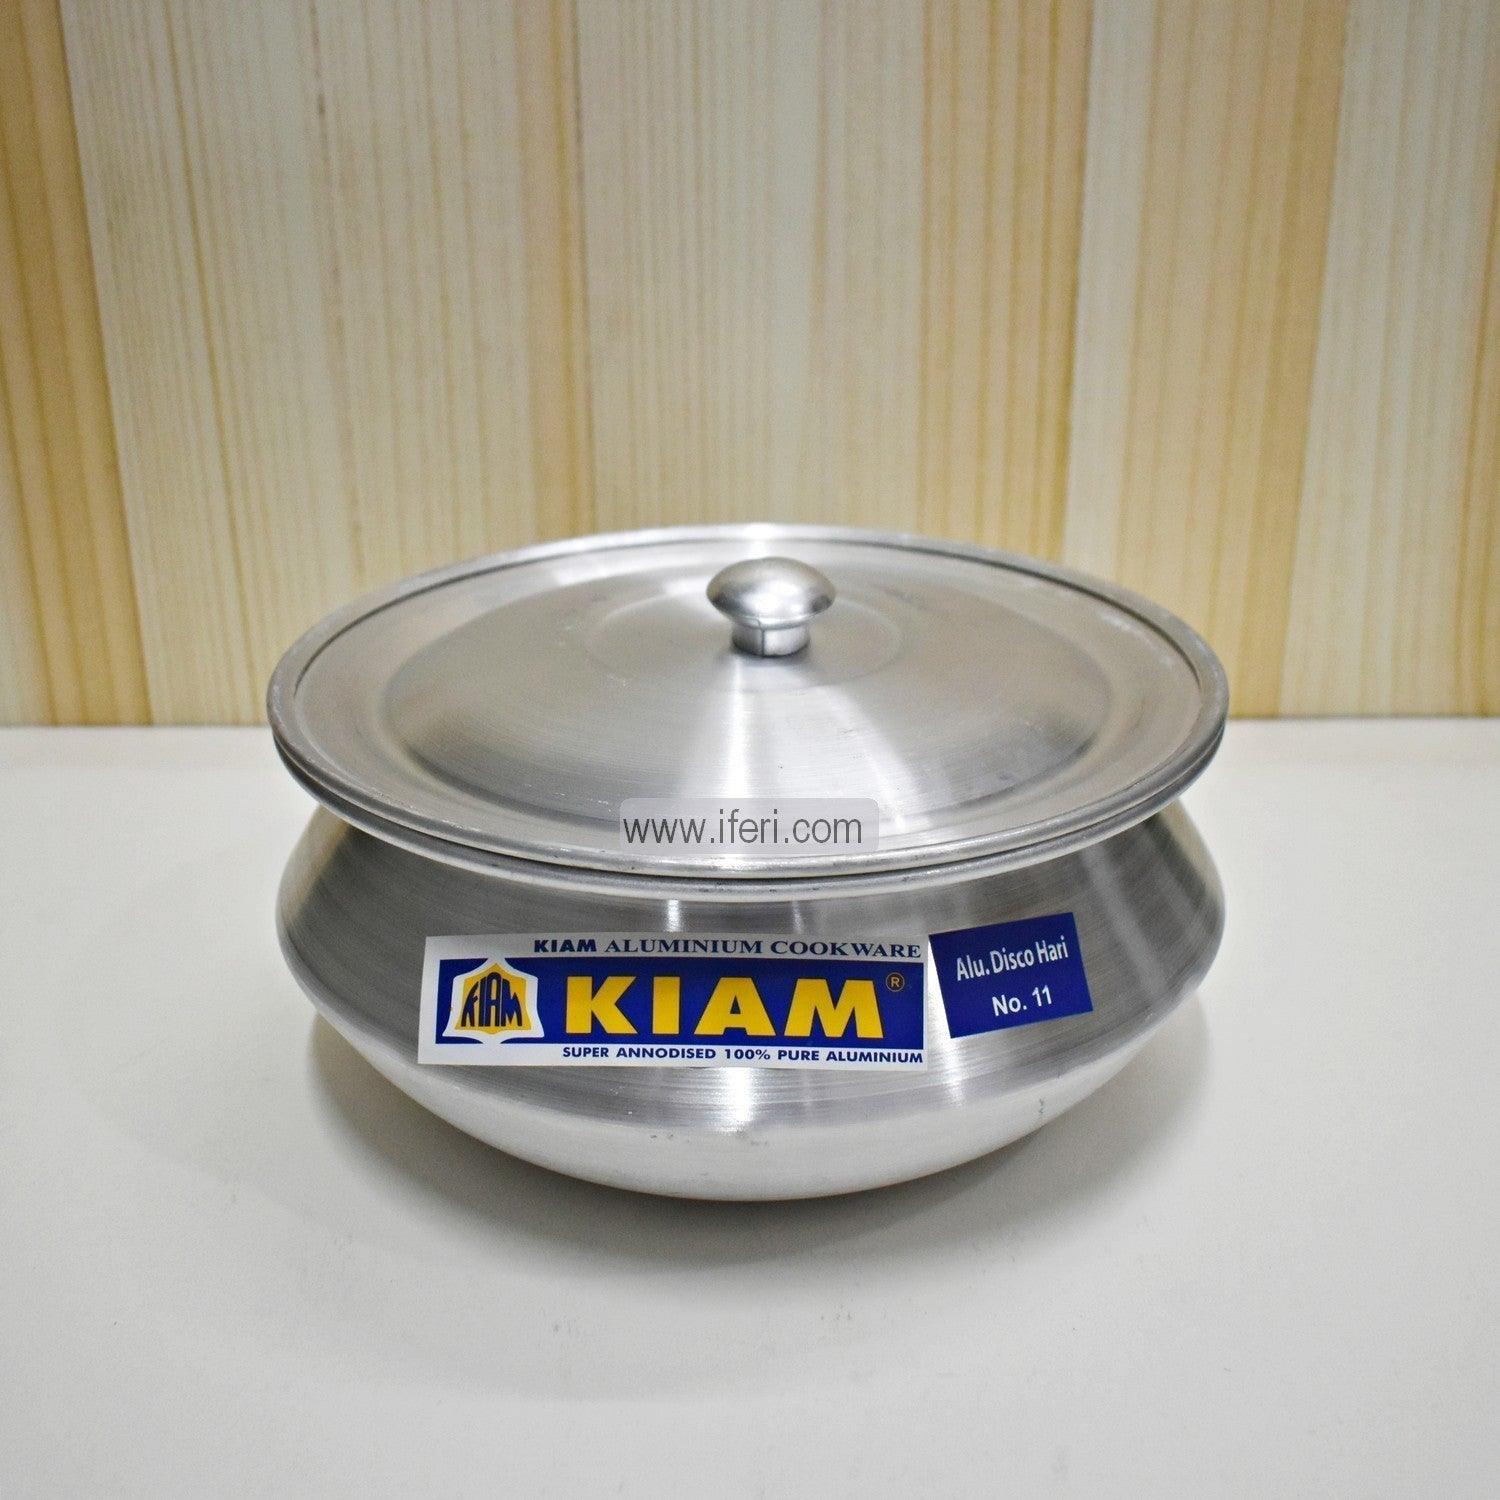 17 cm Kiam Aluminium Hari Cookware With Aluminium Lid BCG02221 Price in Bangladesh - iferi.com